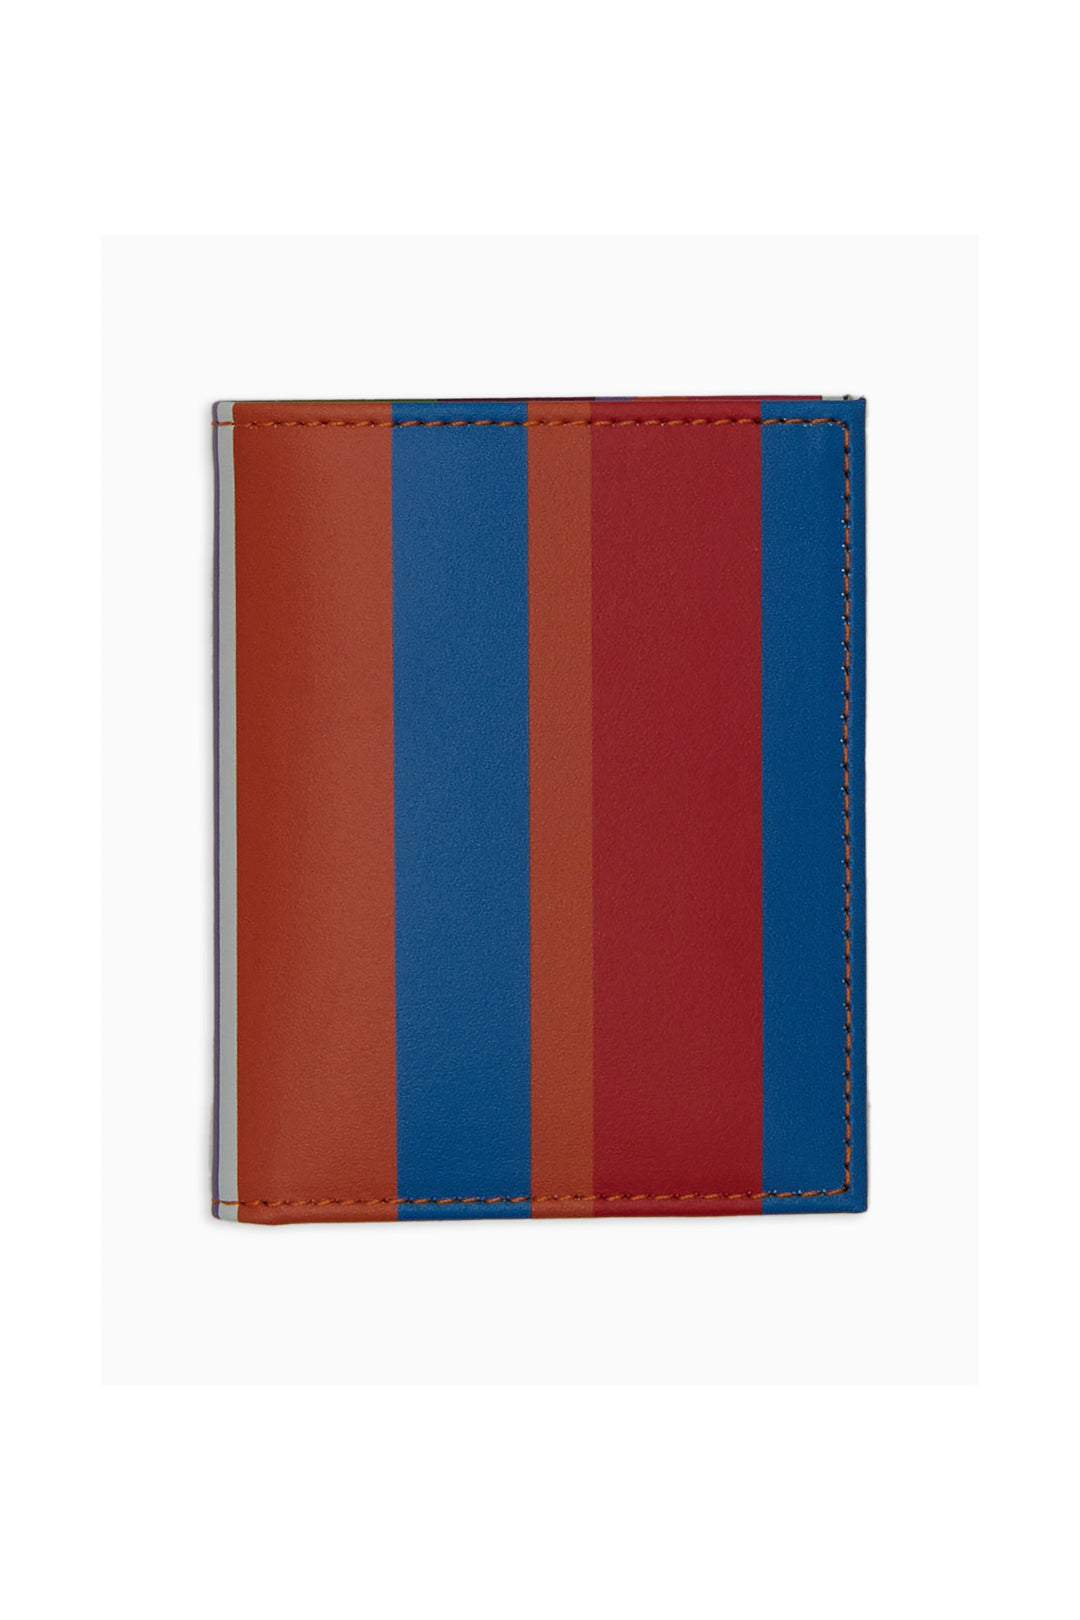 GALLO Porta carta di credito pelle righe multicolor azzurro - Mancinelli 1954